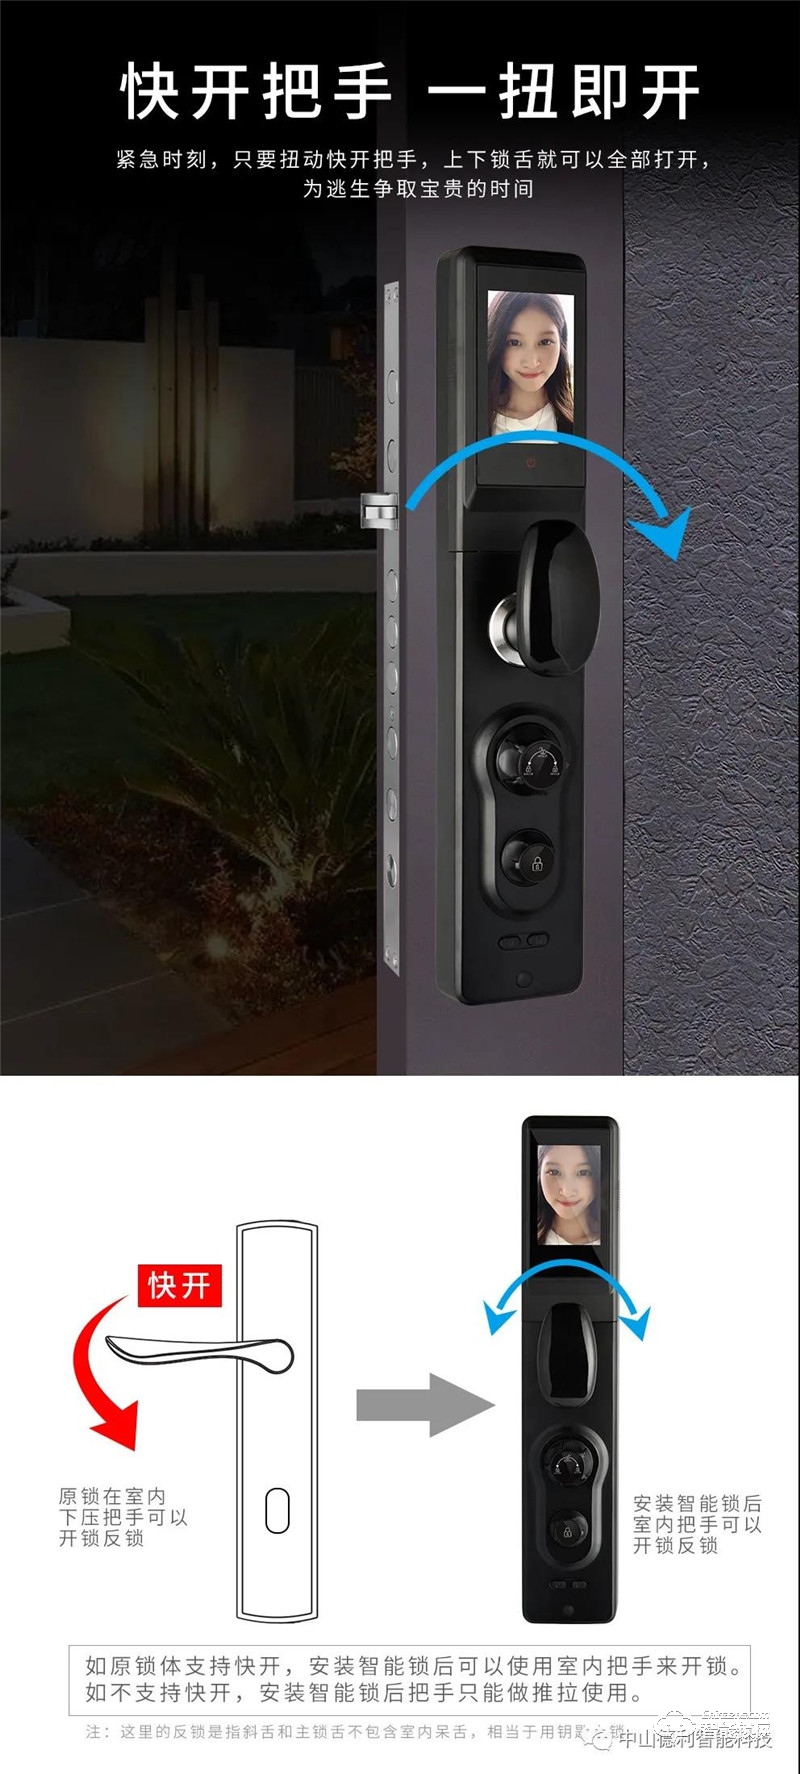 德利智能锁 DZ010A全自动可视猫眼安防指纹锁.jpg